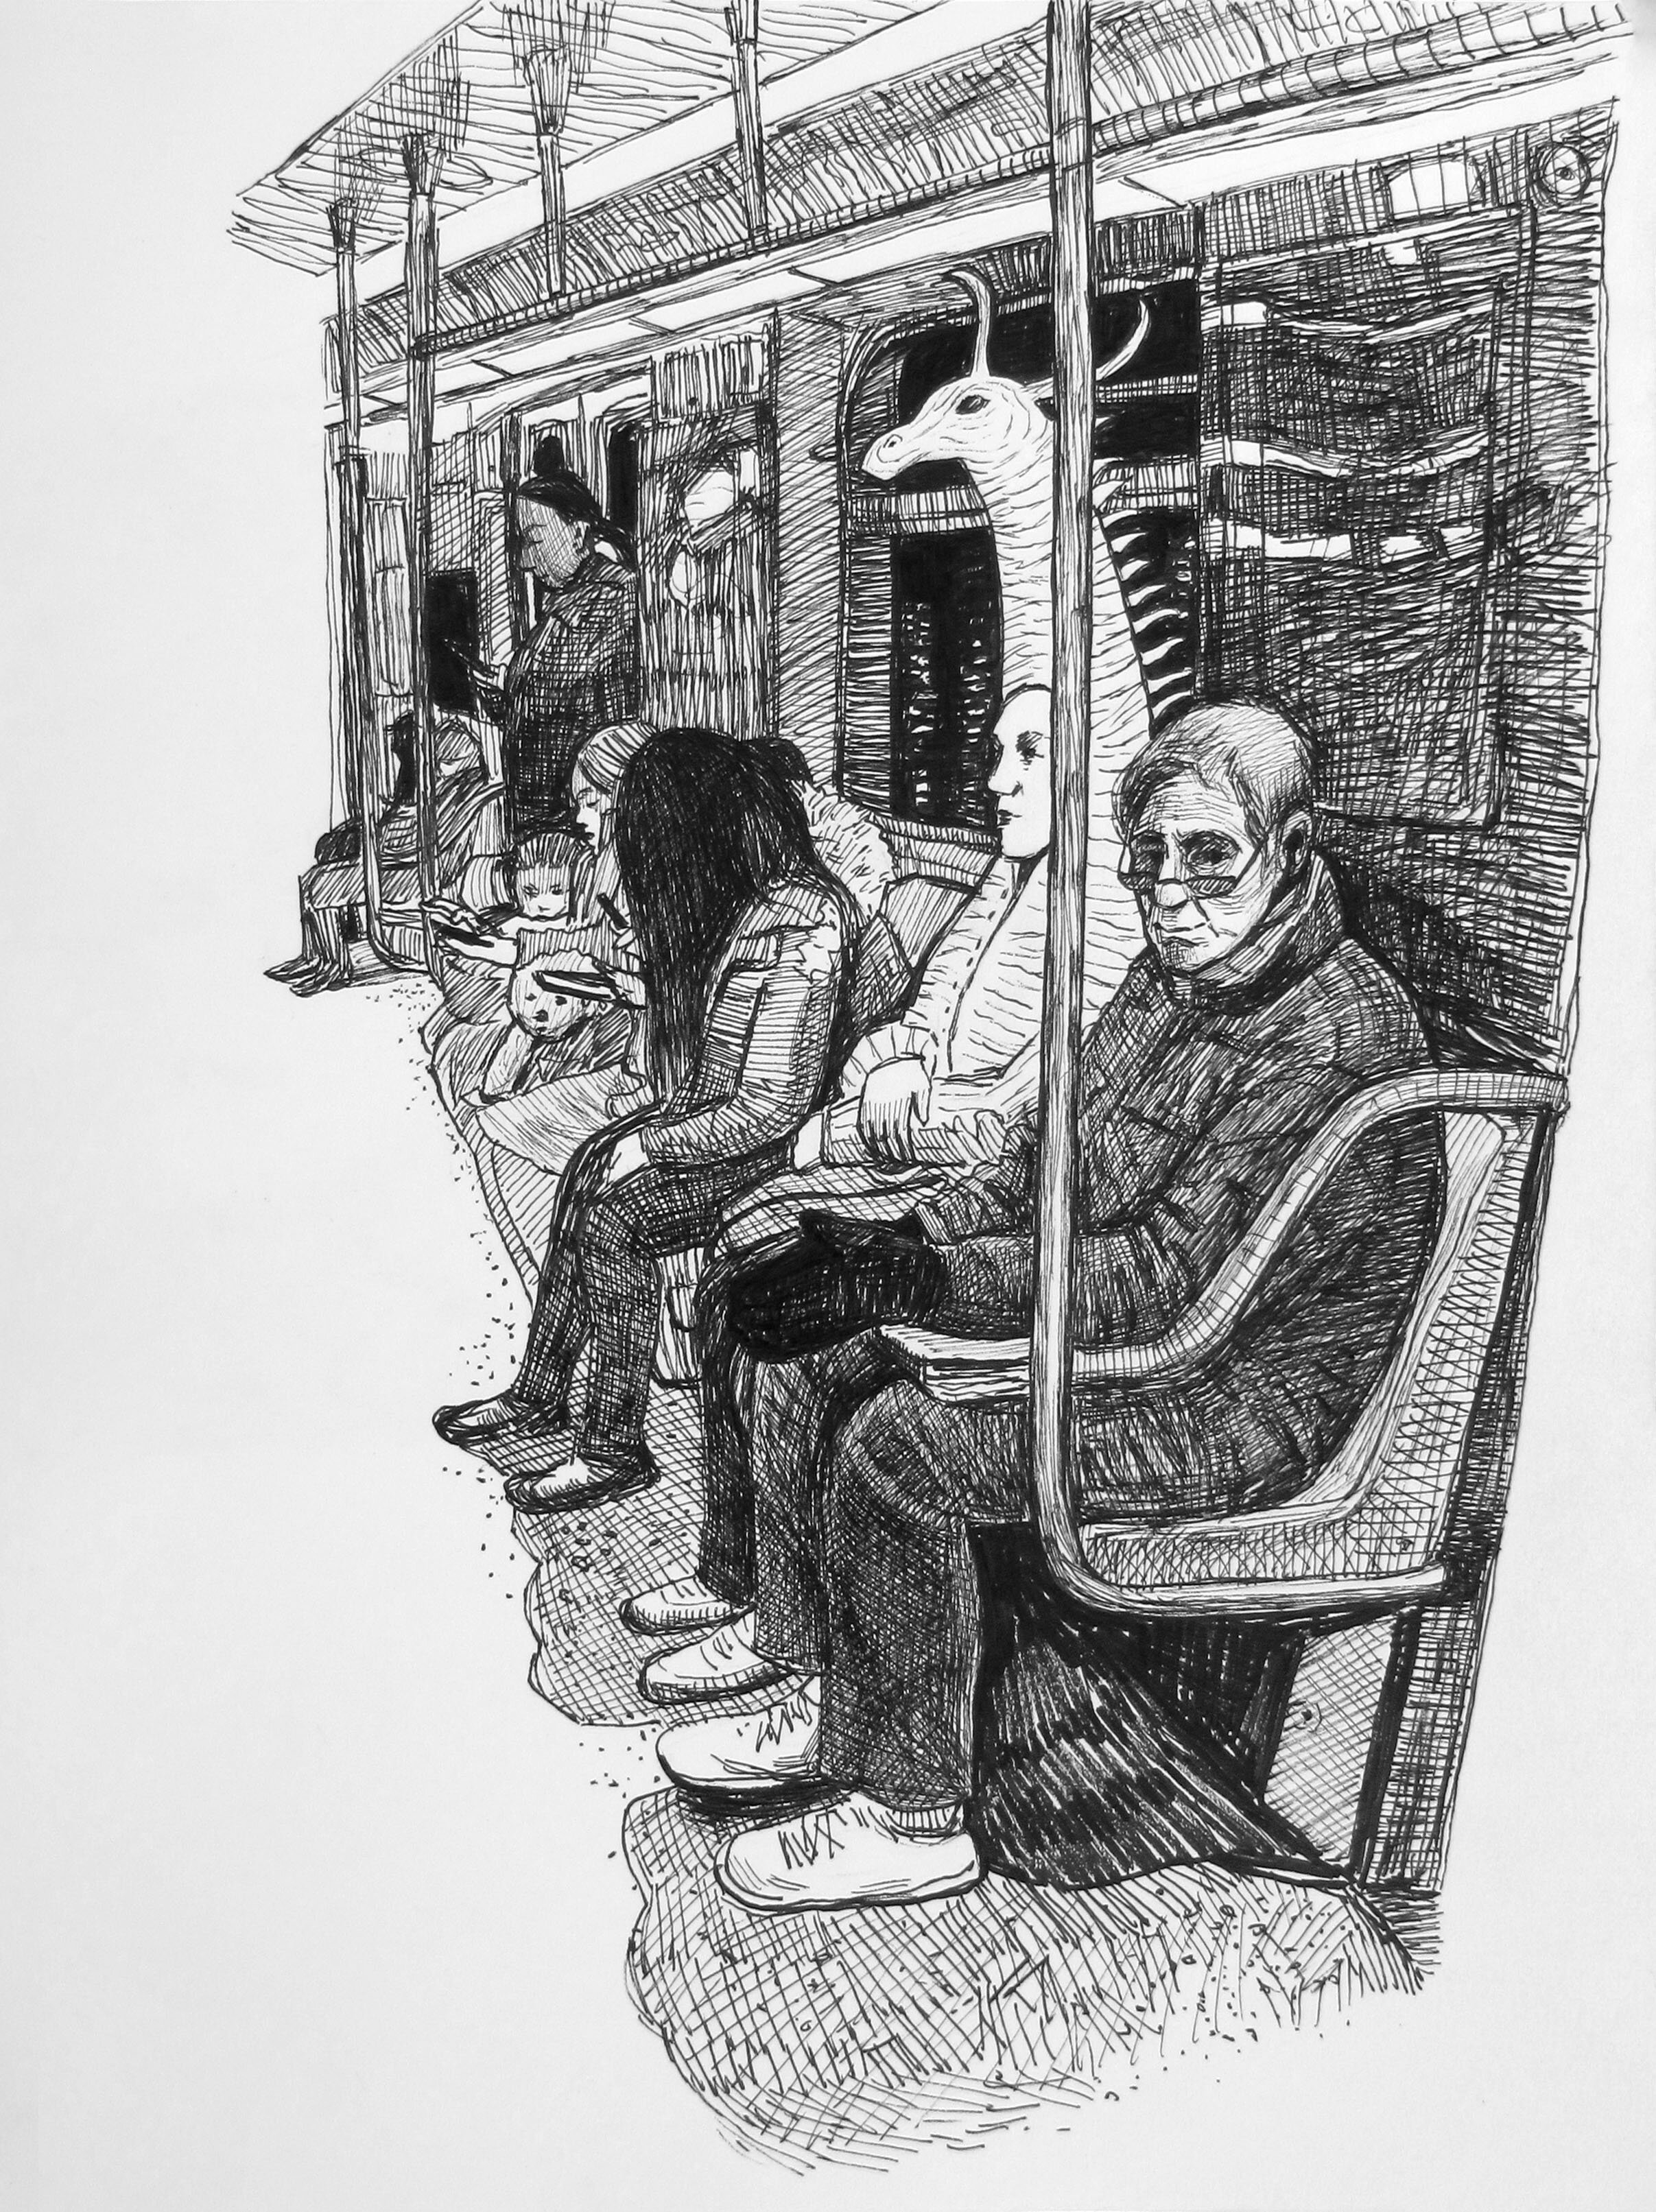 Subway riders